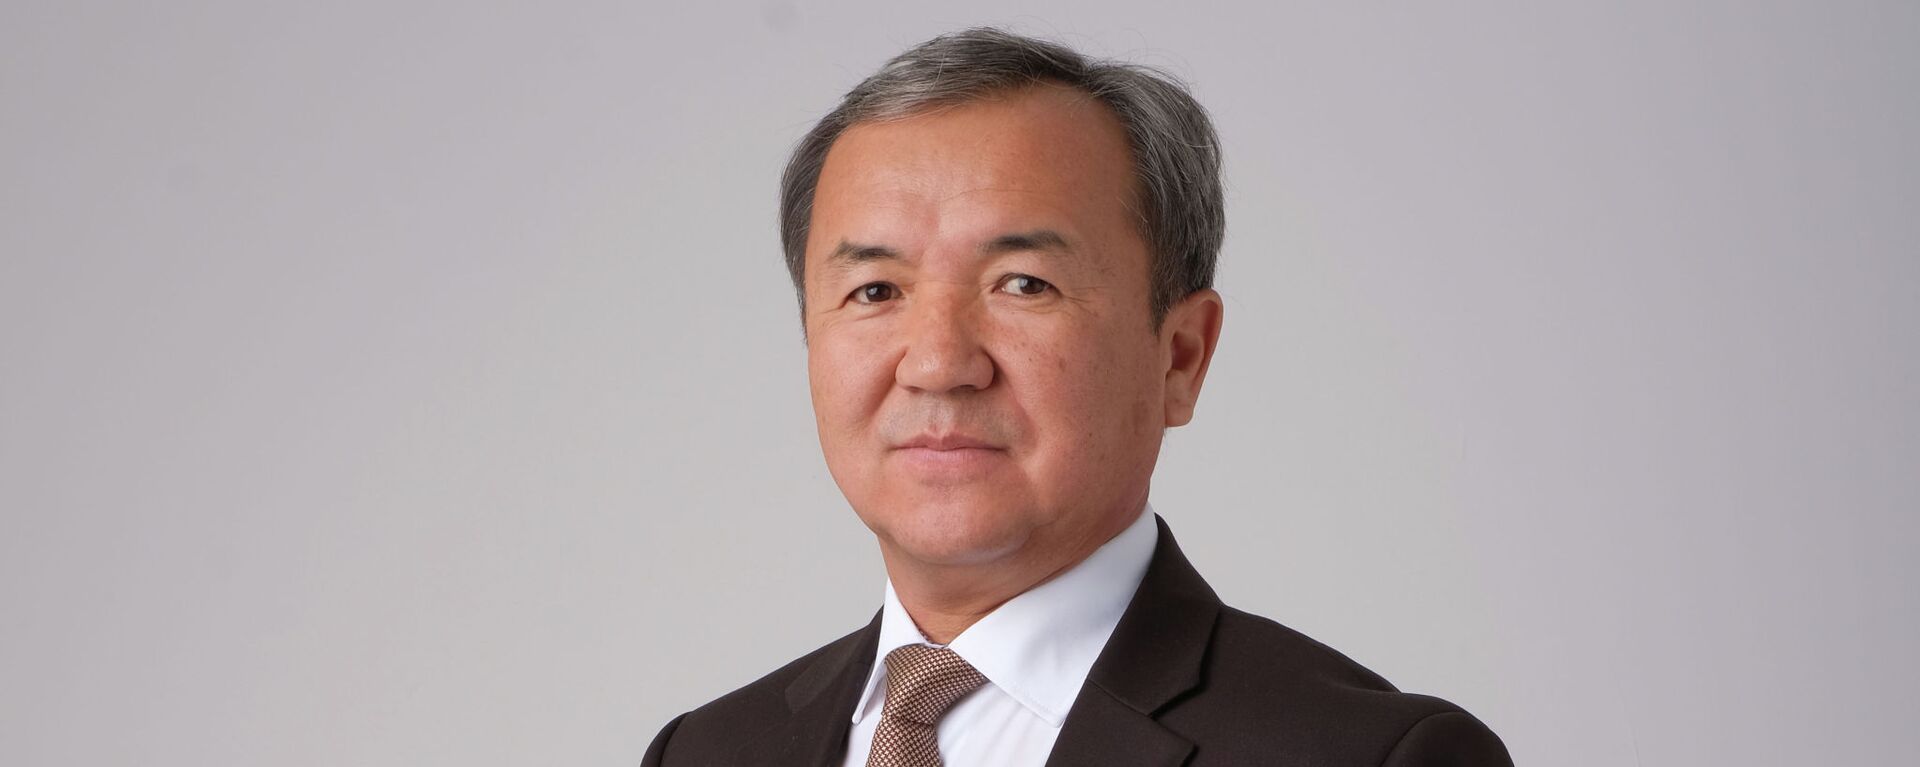 Назначенный первым заместителем управляющего делами президента Кыргызстана Нуртазин Джетыбаев. Архивное фото - Sputnik Кыргызстан, 1920, 16.12.2021